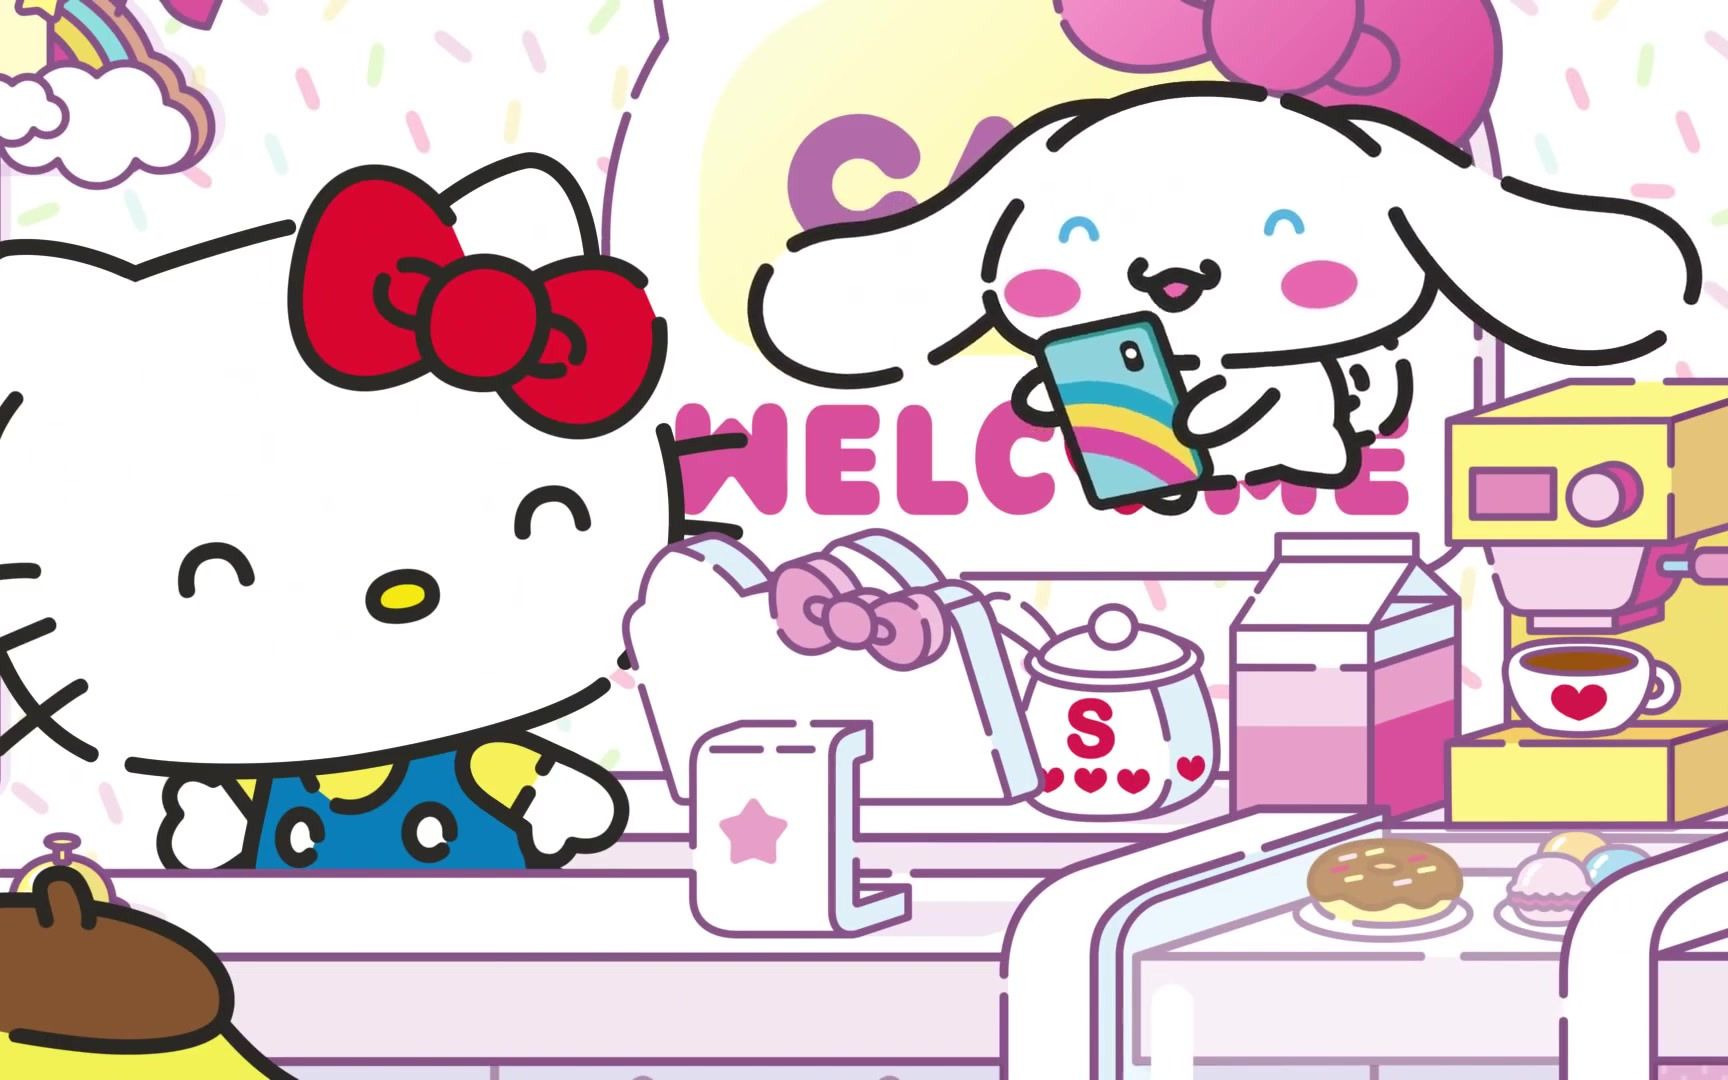 iPhone 壁纸 Hello Kitty 凯蒂 - 堆糖，美图壁纸兴趣社区